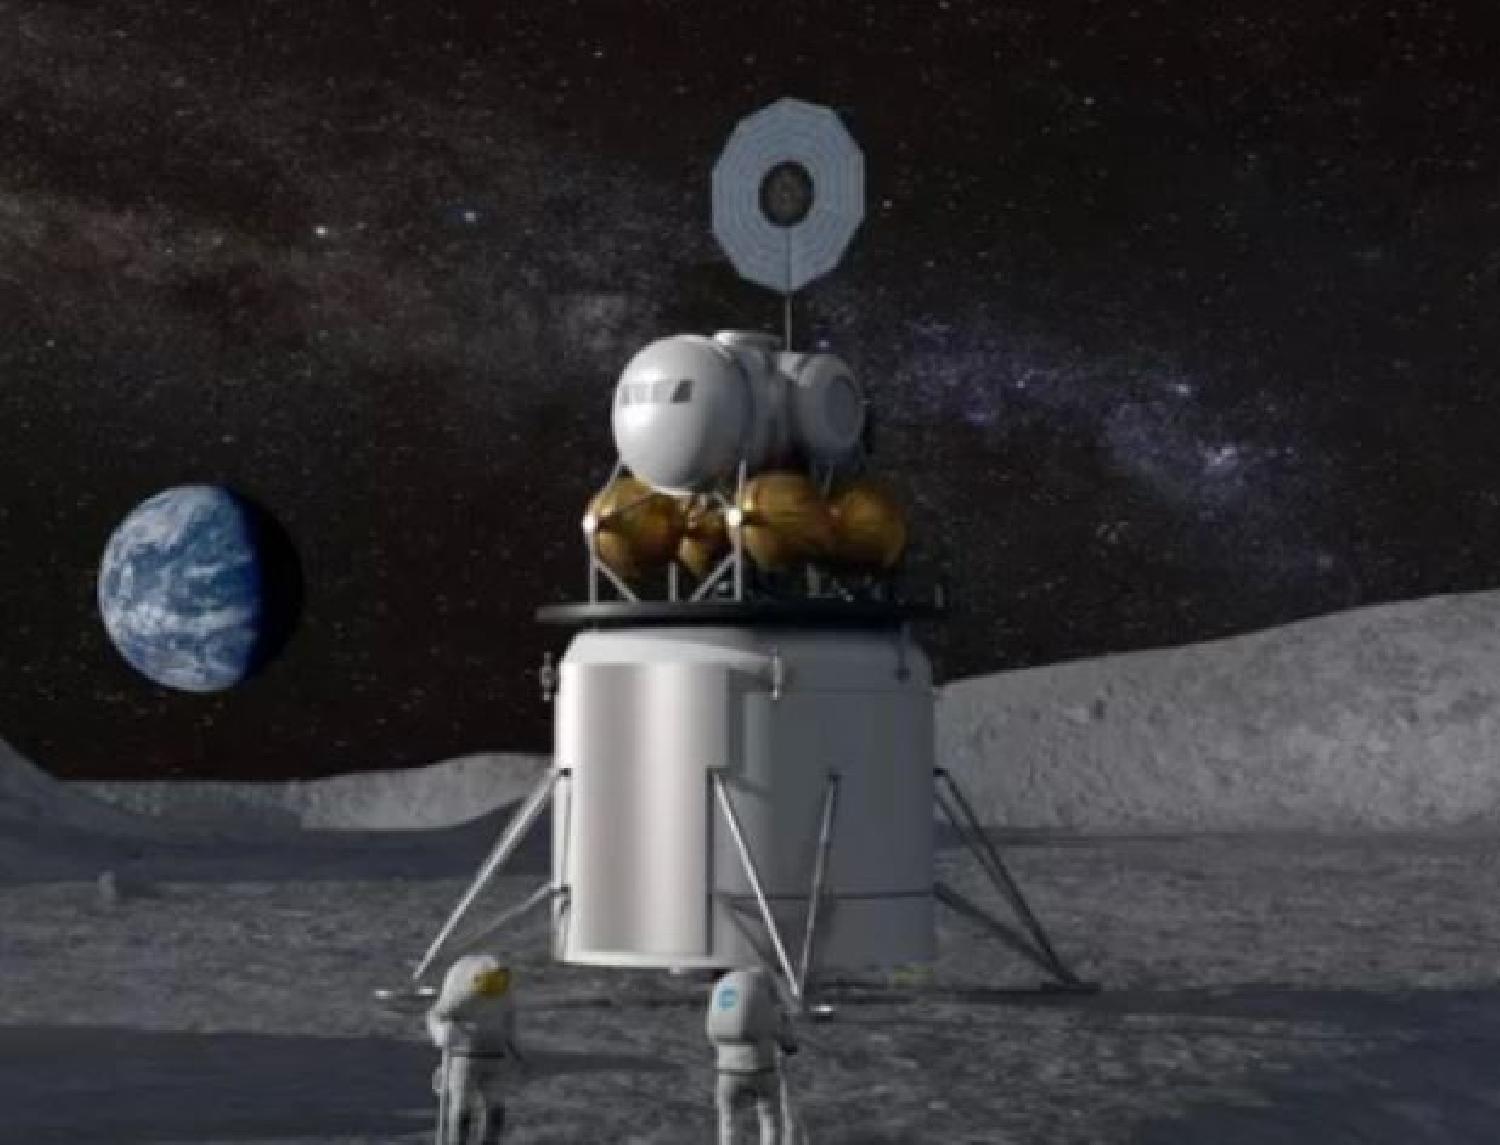 الميزانية وضيق الوقت يهددان خطة ناسا للعودة إلى القمر